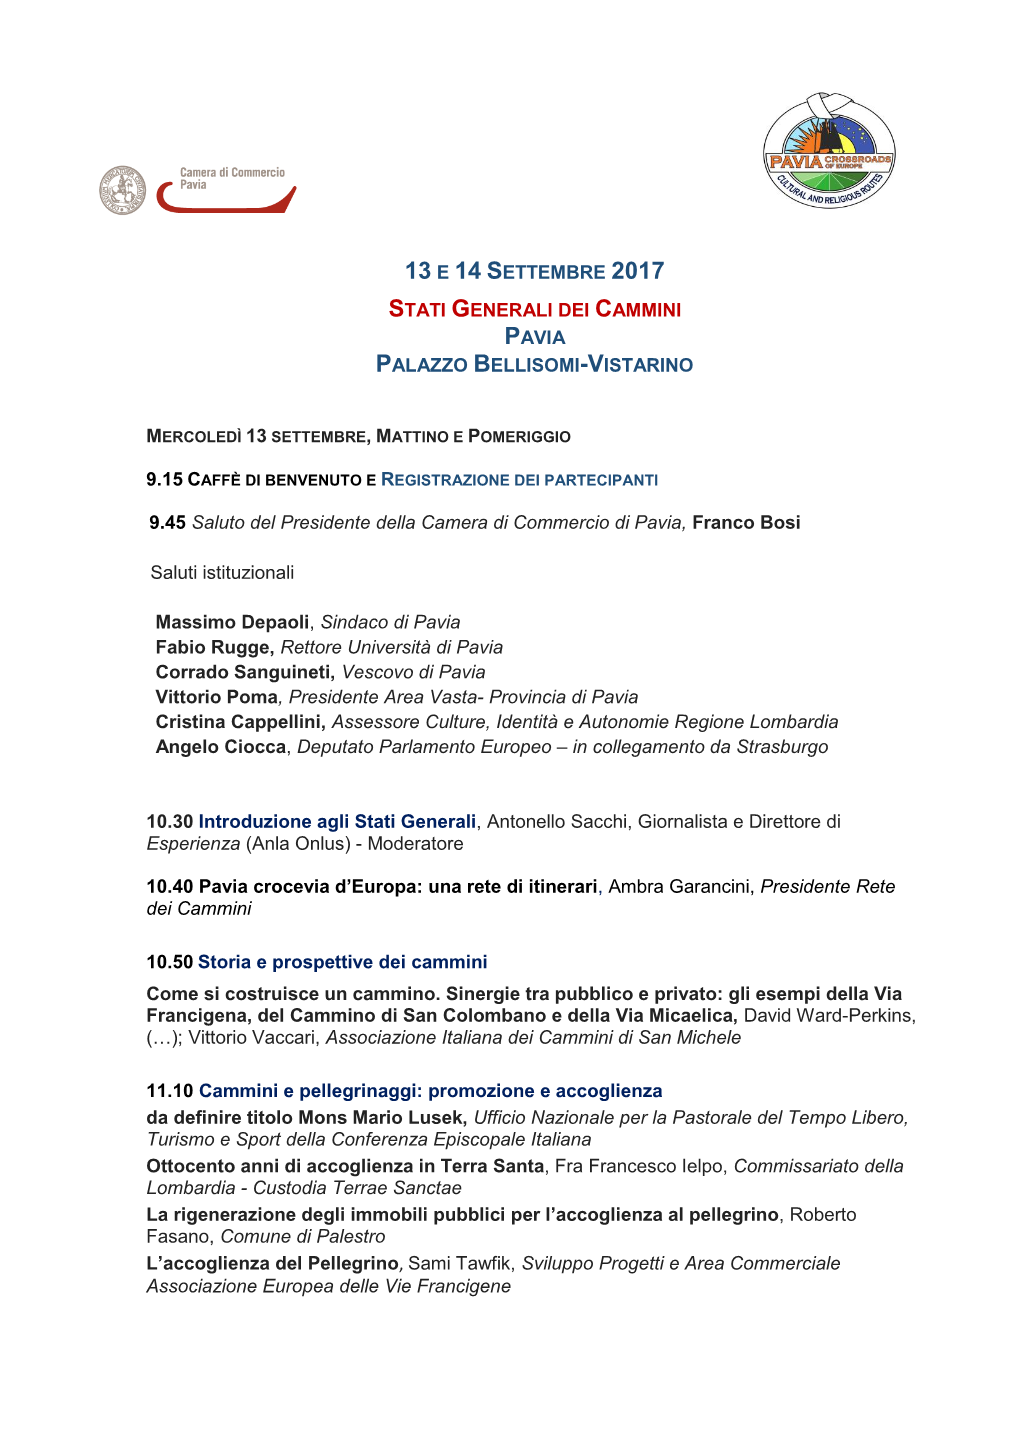 13 E 14 Settembre 2017 Stati Generali Dei Cammini Pavia Palazzo Bellisomi-Vistarino